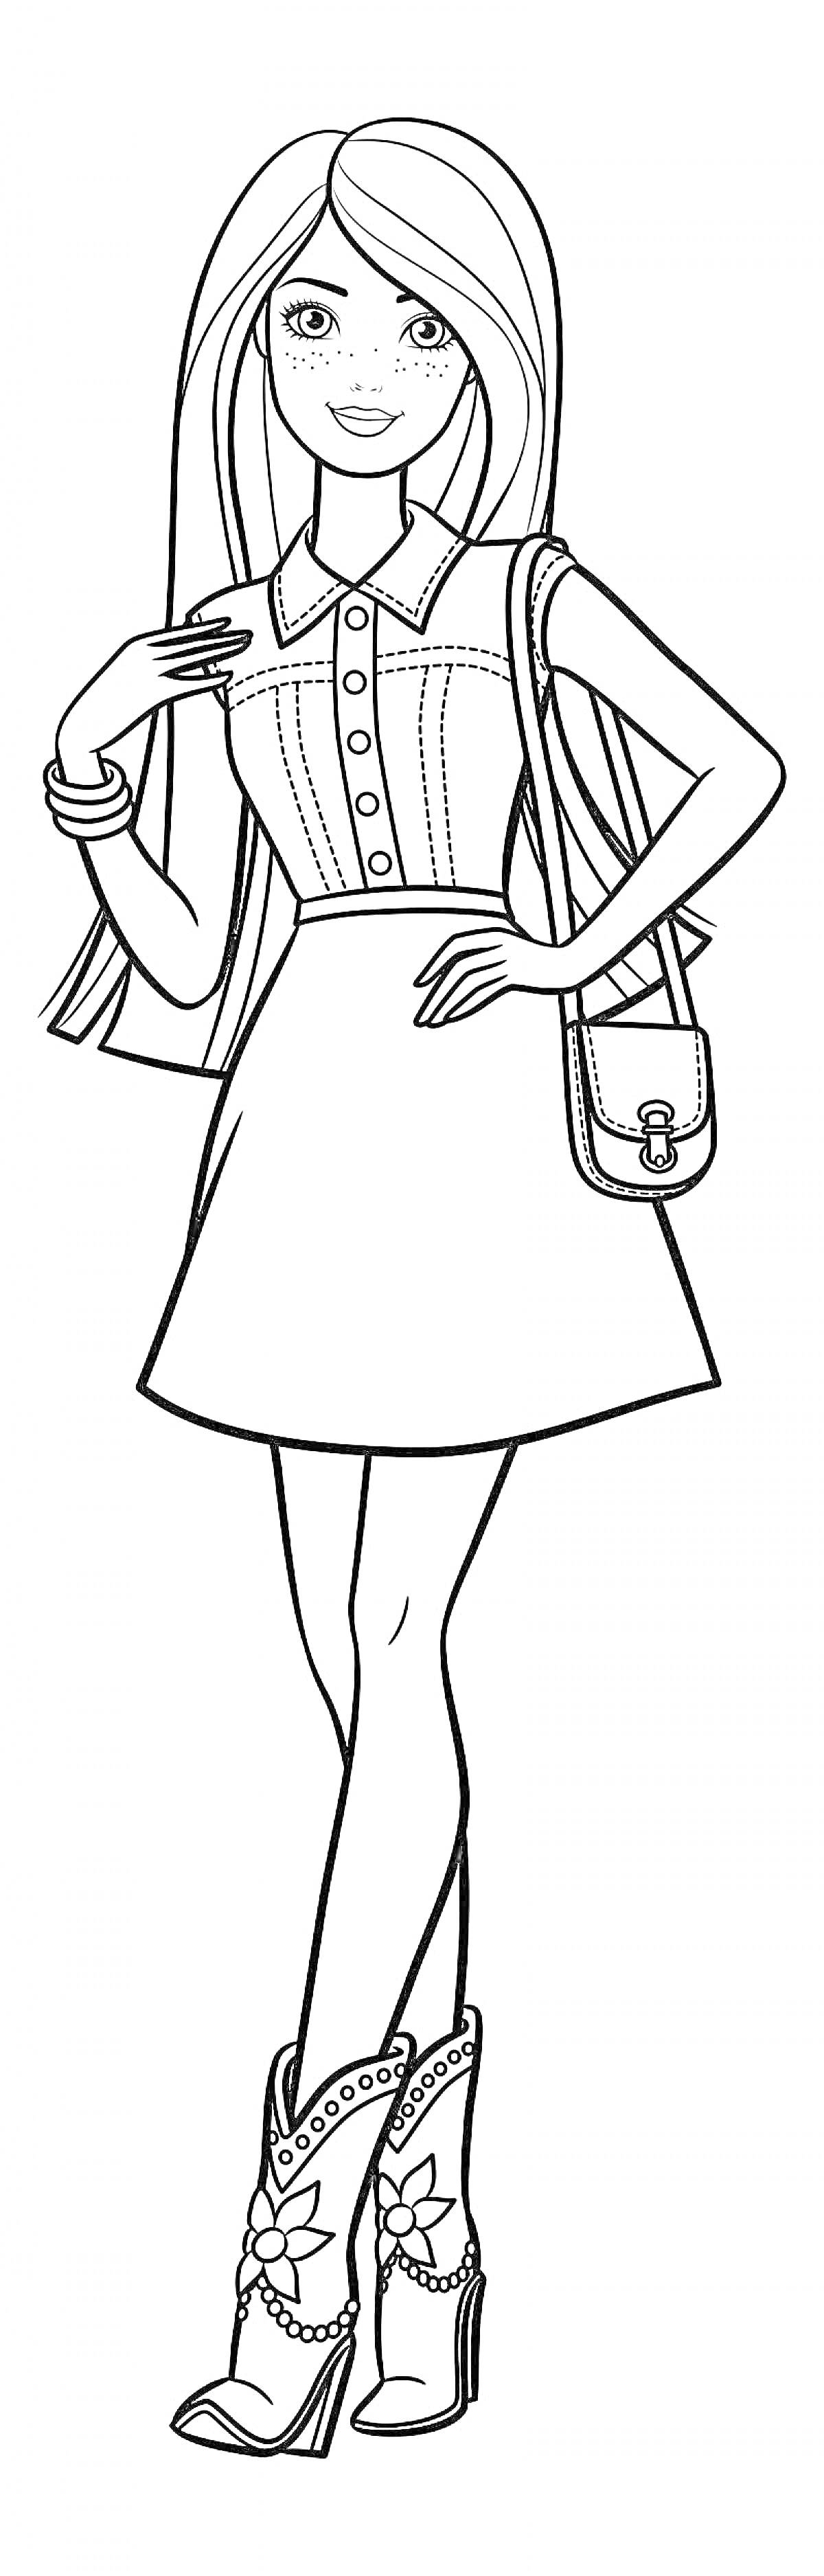 Раскраска Девушка в платье с аксессуарами (сумка через плечо, браслеты, высокие сапоги с цветочным узором)